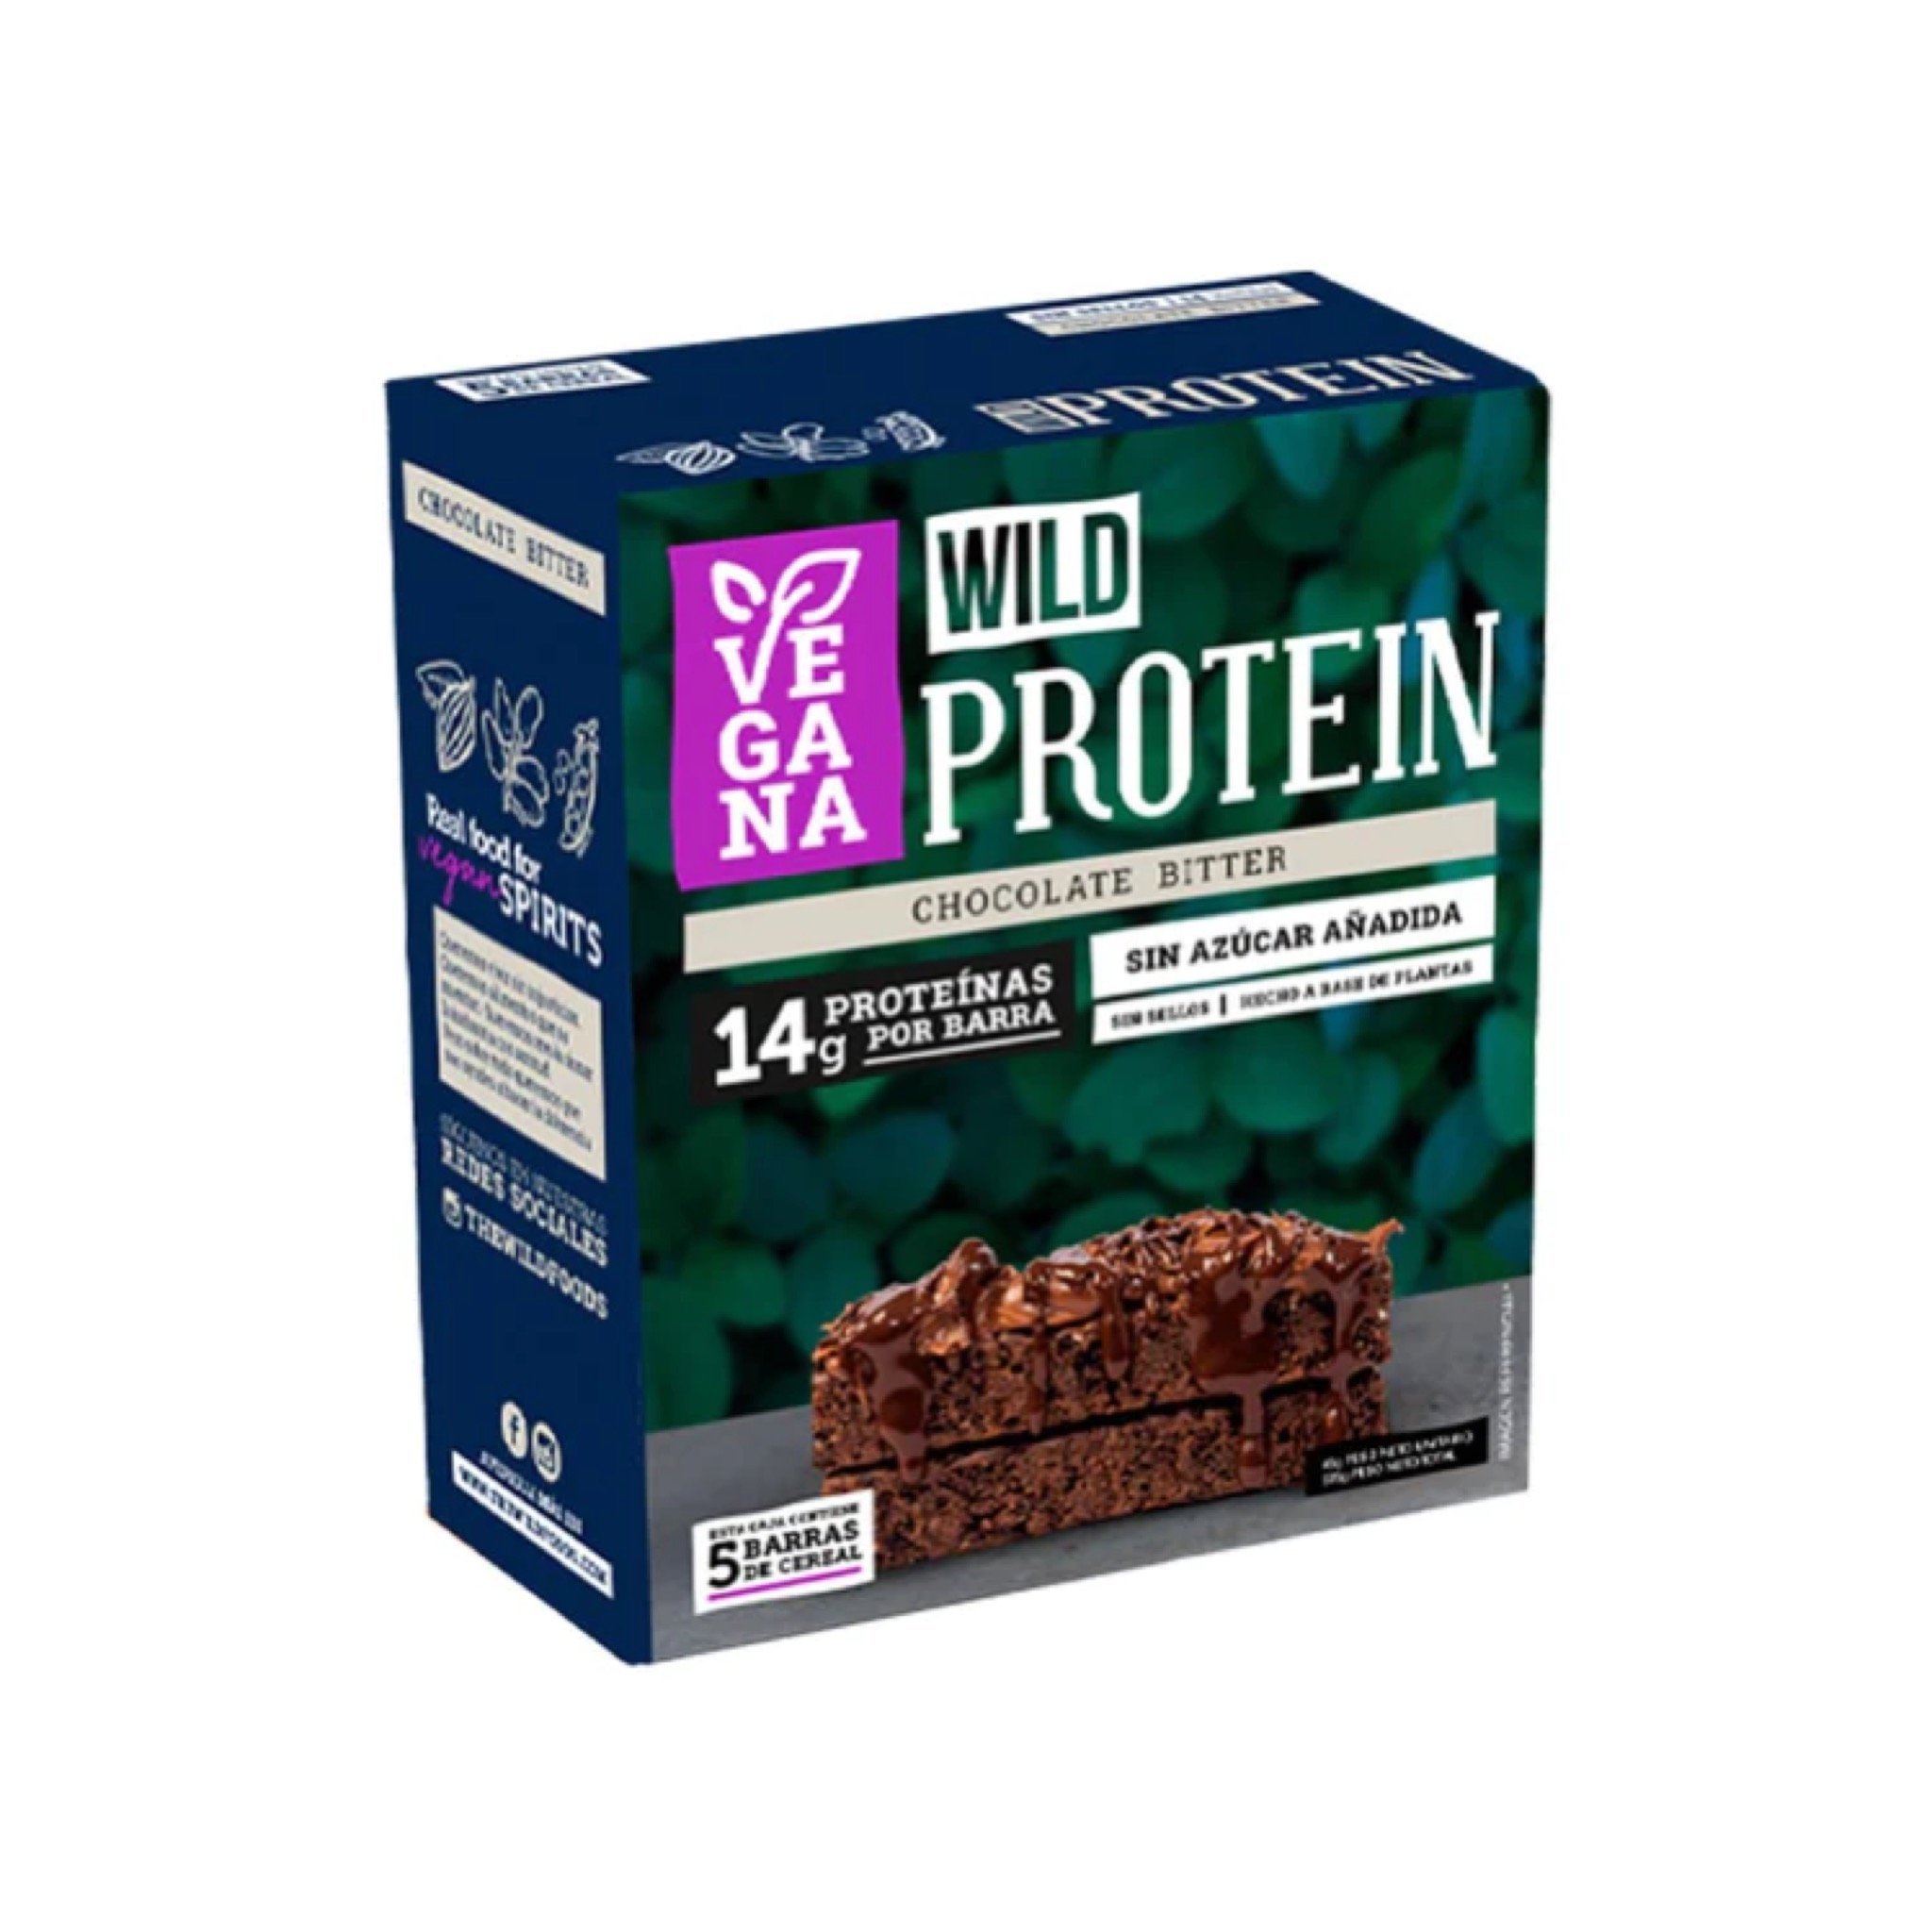 Wild Protein Vegana Chocolate Bitter  unidades